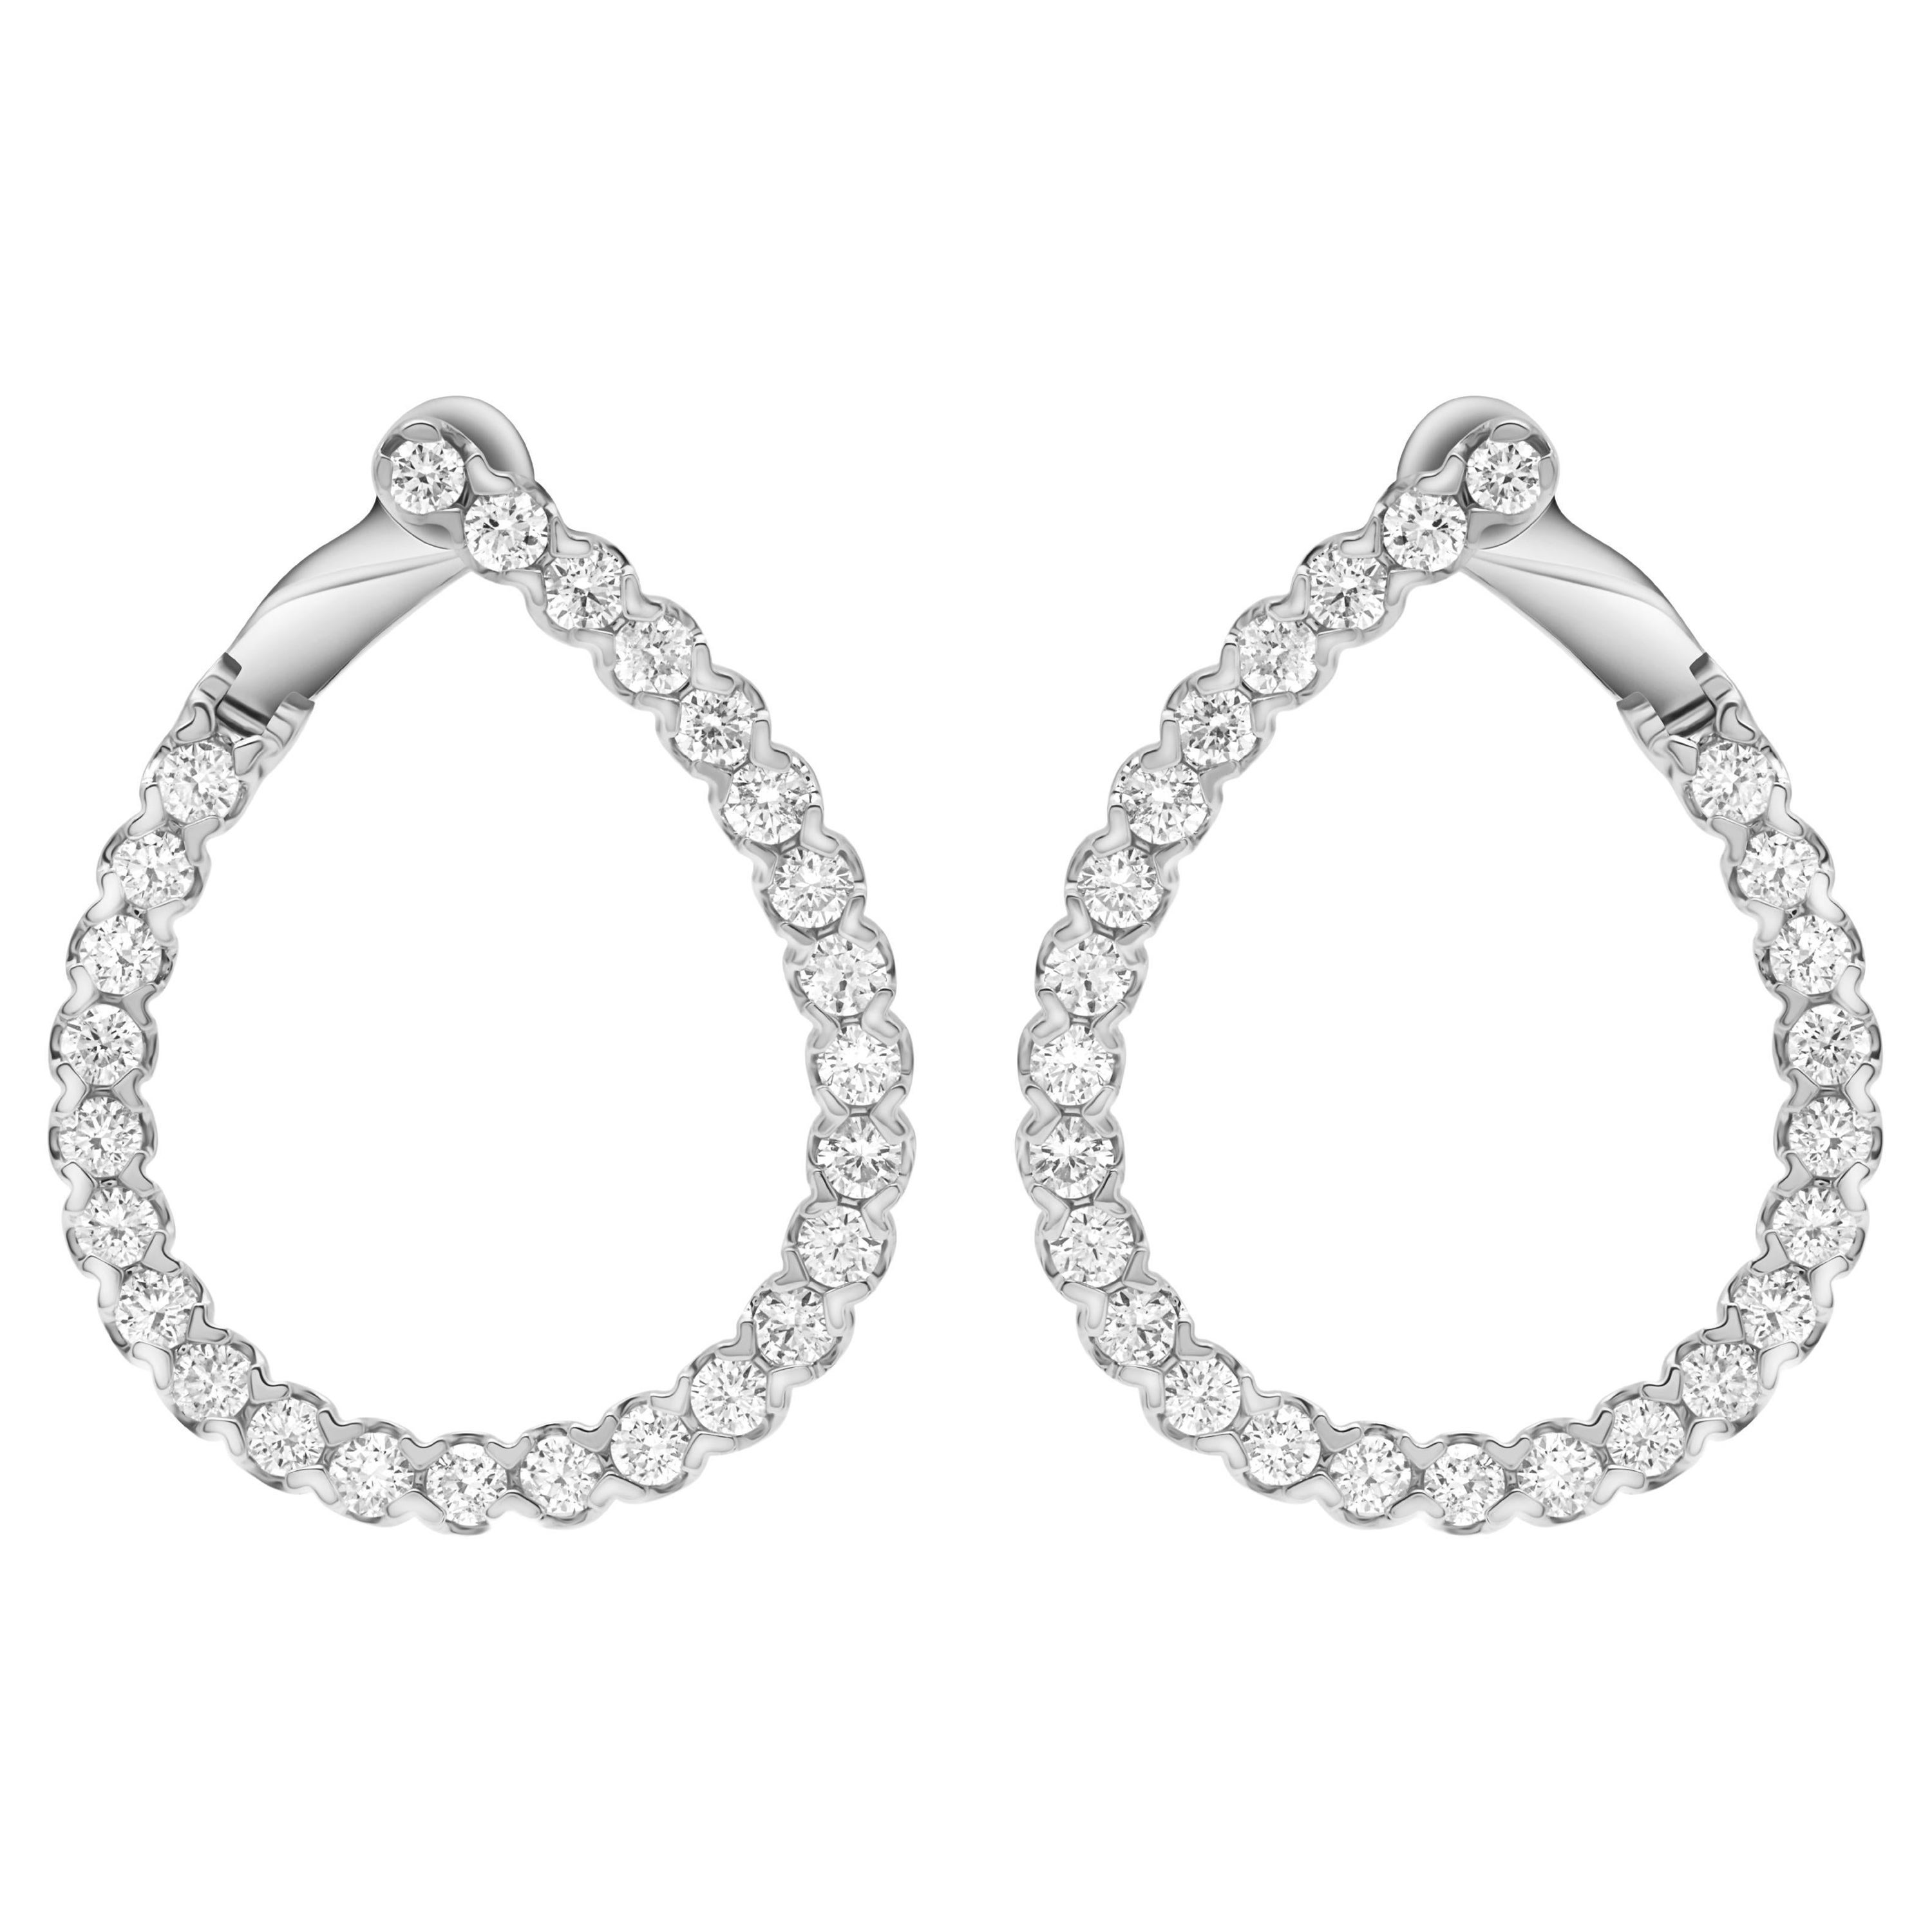 2.19 Carat Diamond Teardrop Swirl Hoop Earrings in 14k White Gold ref1972